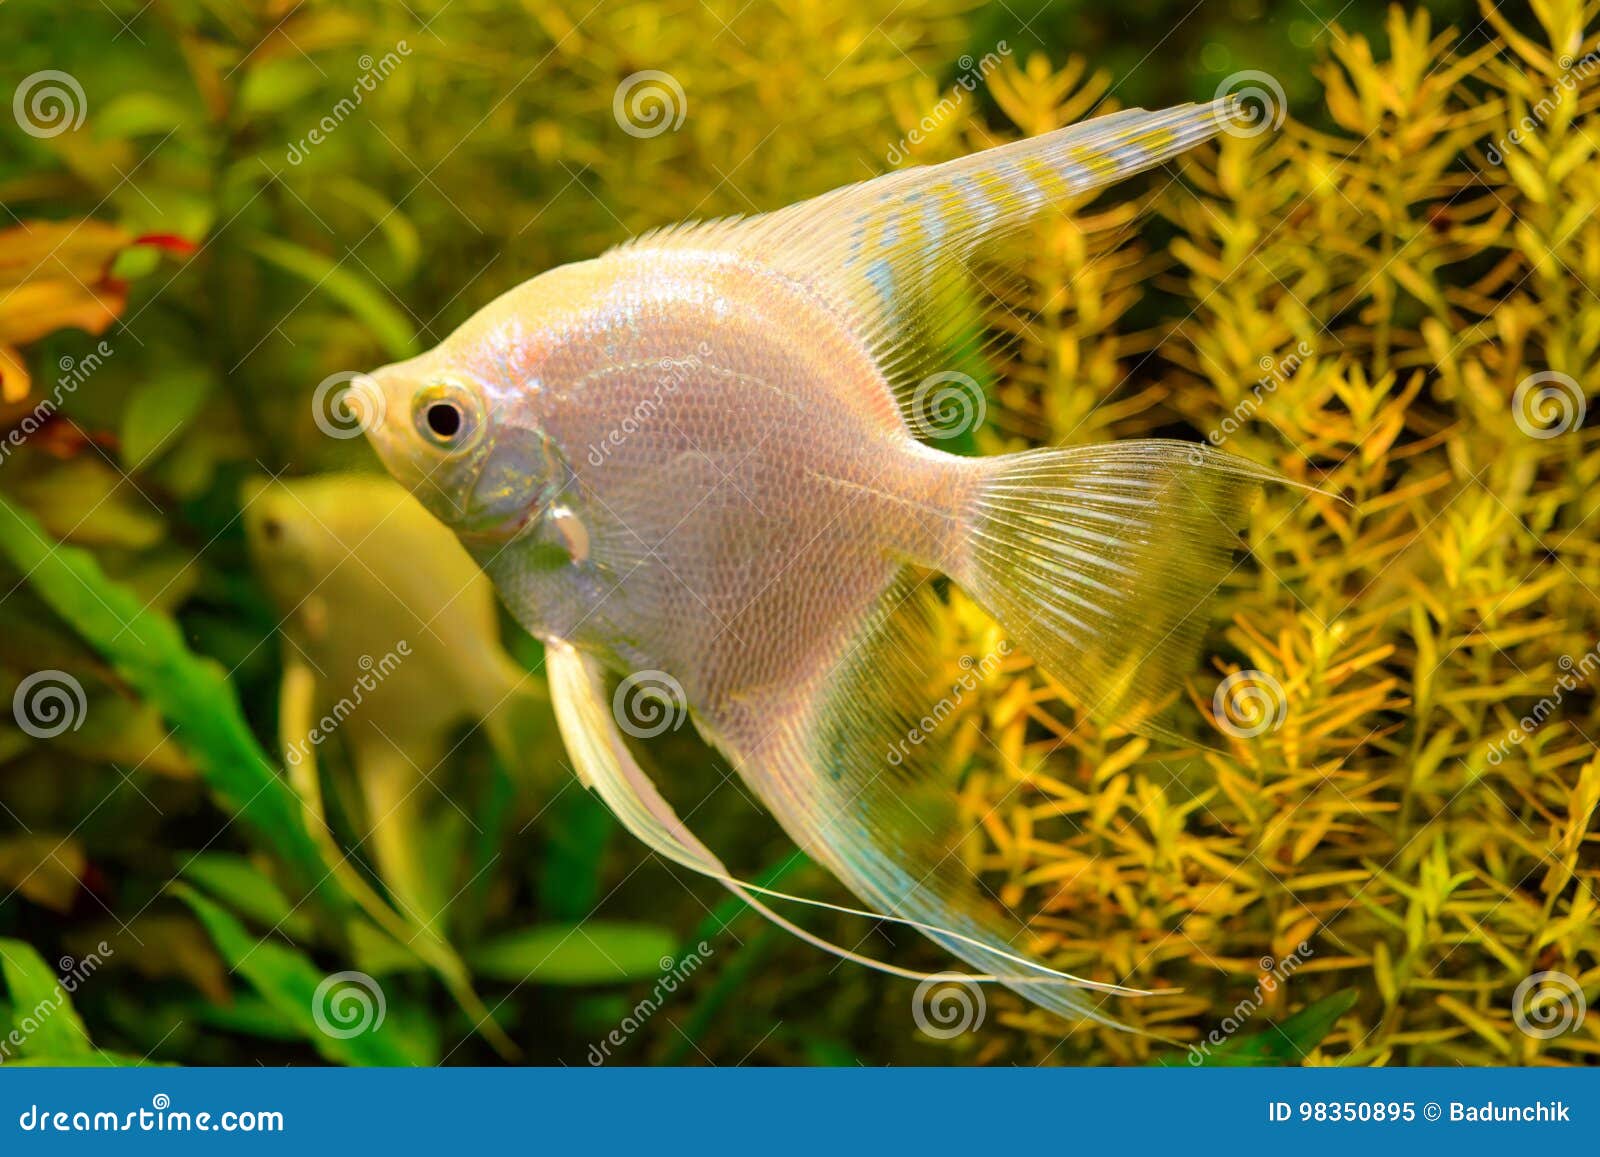 Productie zeker Anders Foto Van Aquarium Witte Vissen Op Groene Natuurlijke Achtergrond Stock  Afbeelding - Image of aquatisch, huisdier: 98350895